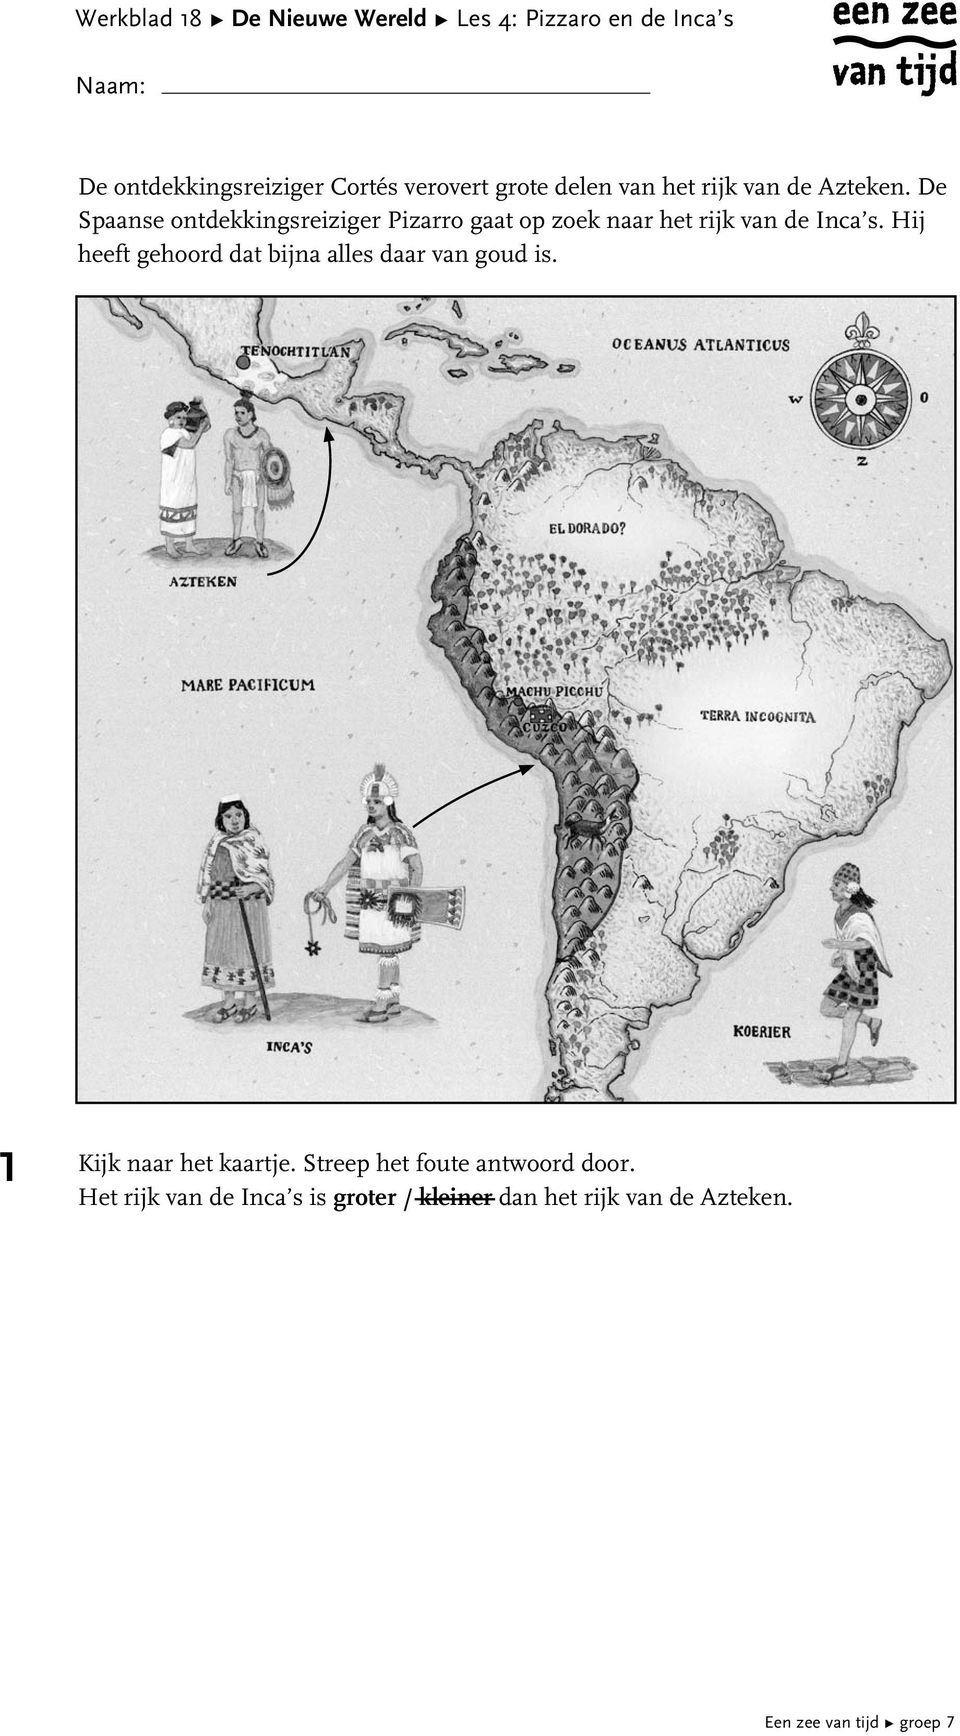 De Spaanse ontdekkingsreiziger Pizarro gaat op zoek naar het rijk de Inca s.